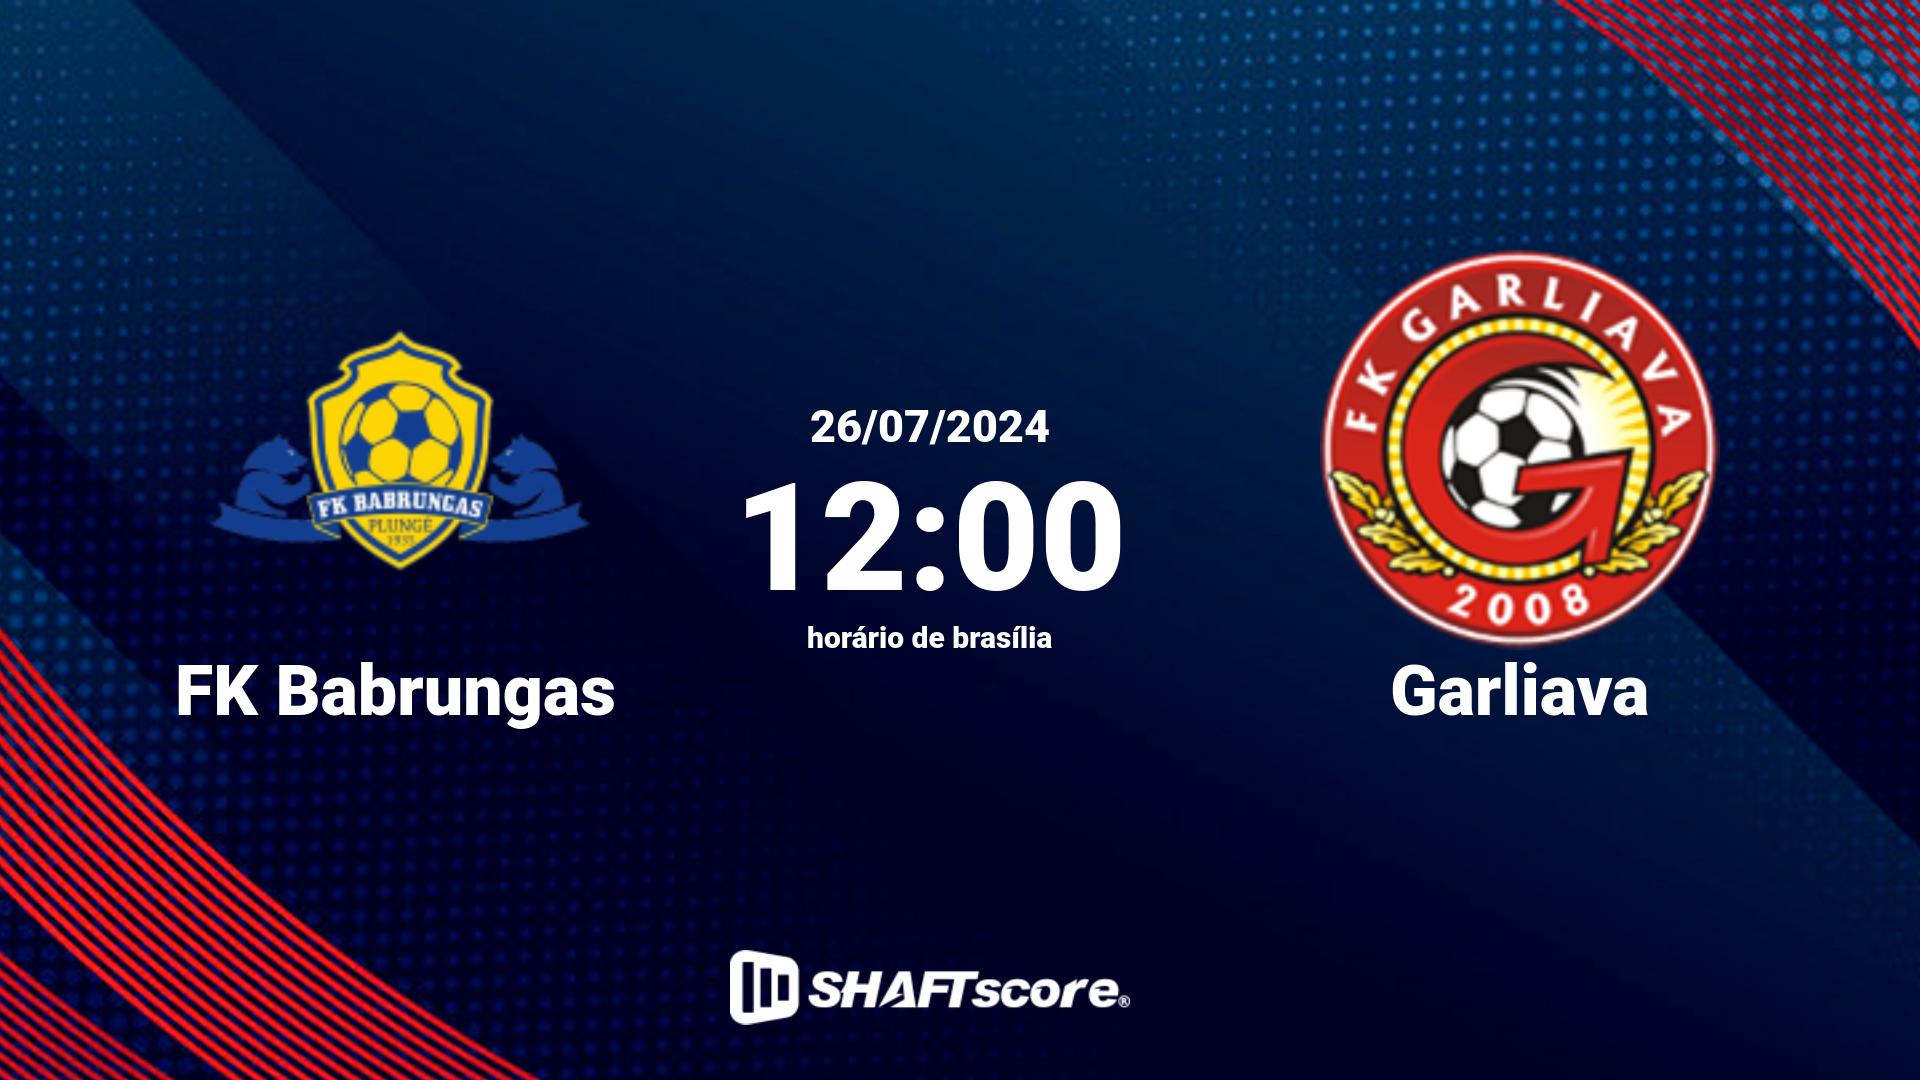 Estatísticas do jogo FK Babrungas vs Garliava 26.07 12:00